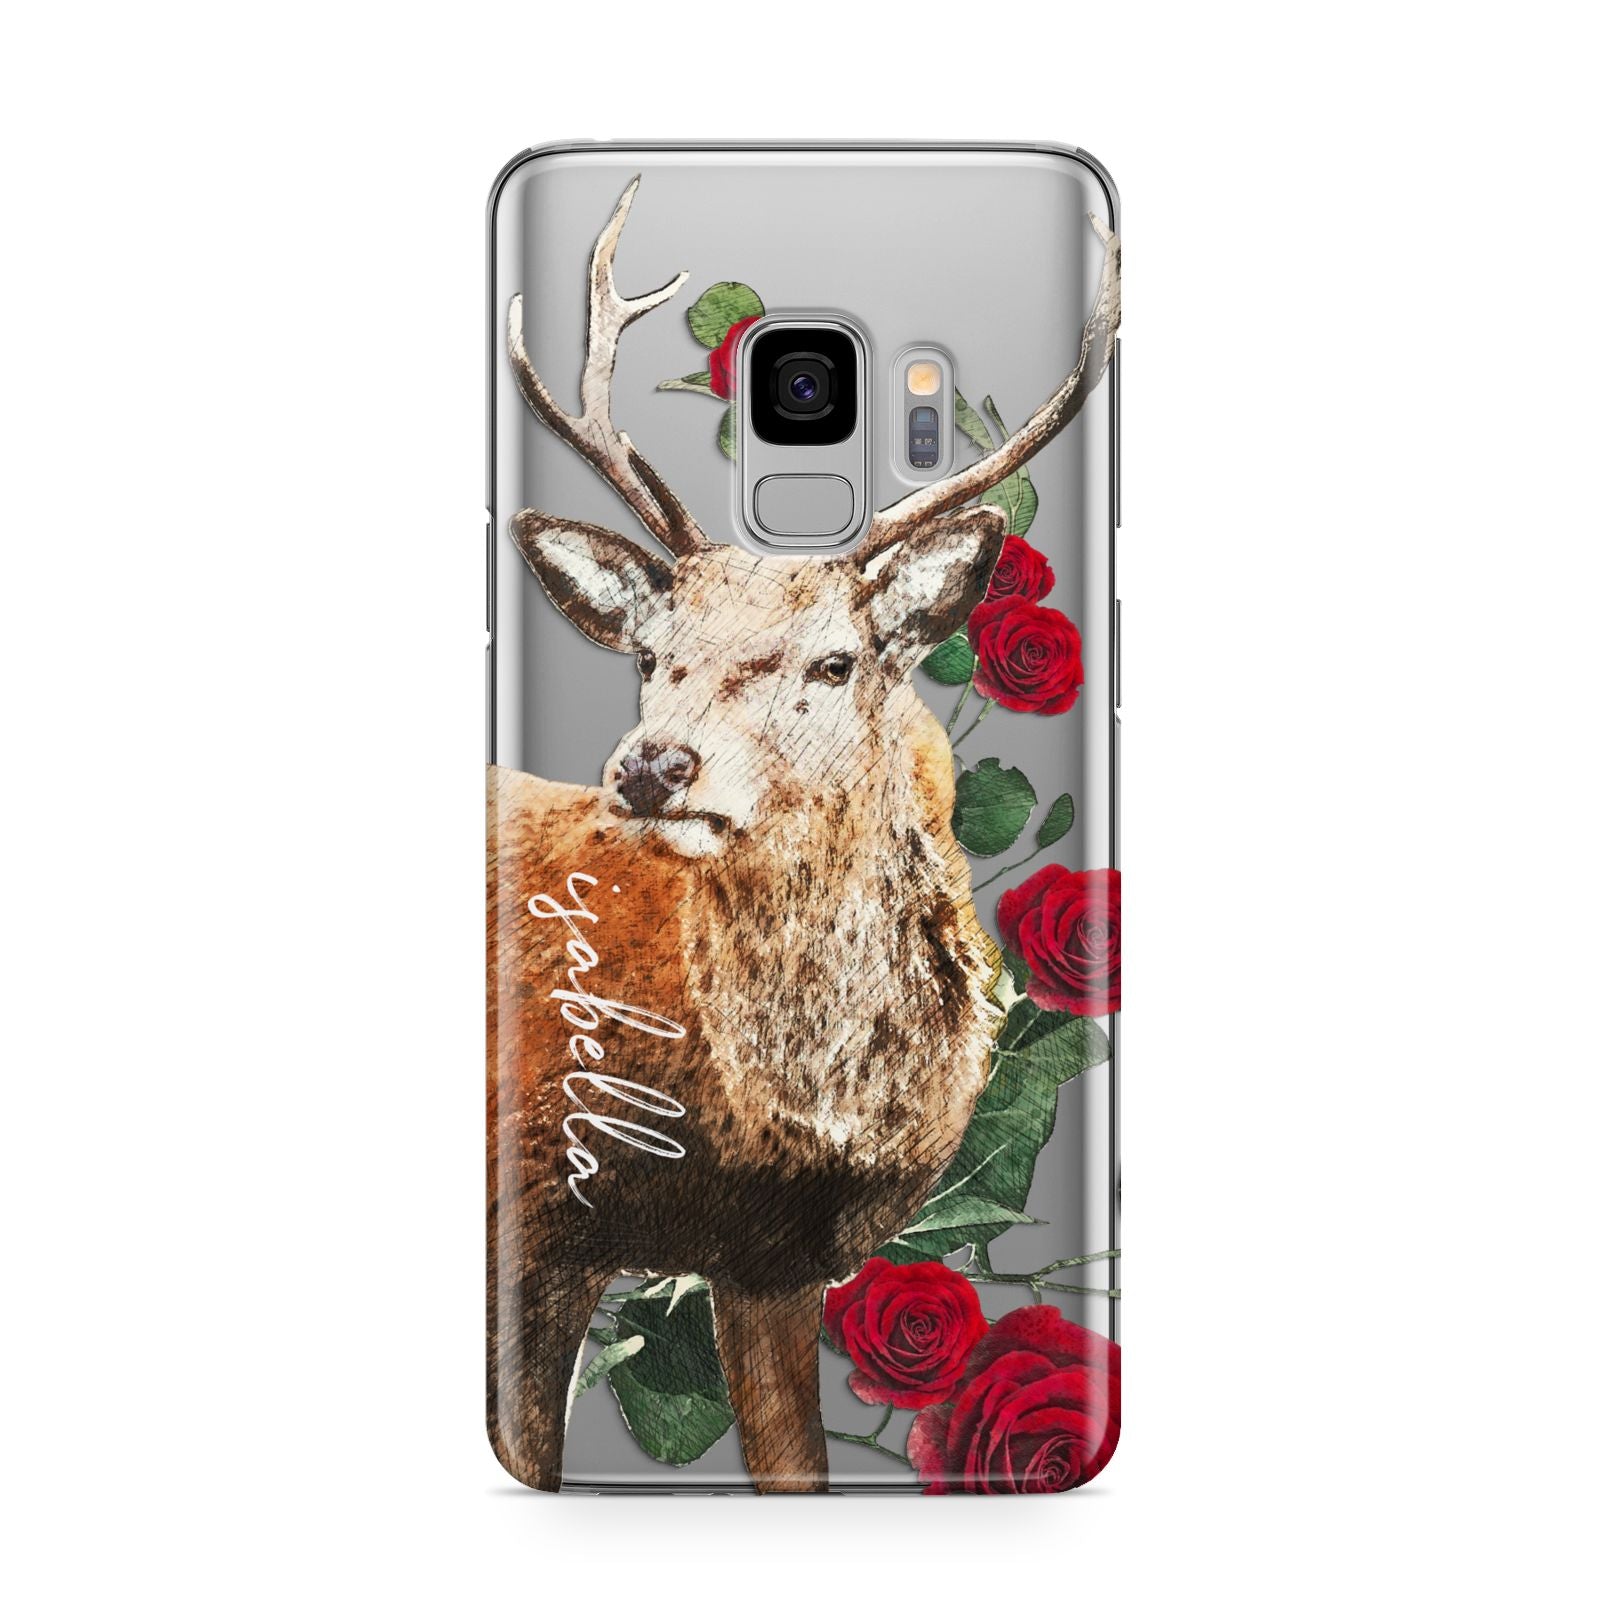 Personalised Deer Name Samsung Galaxy S9 Case